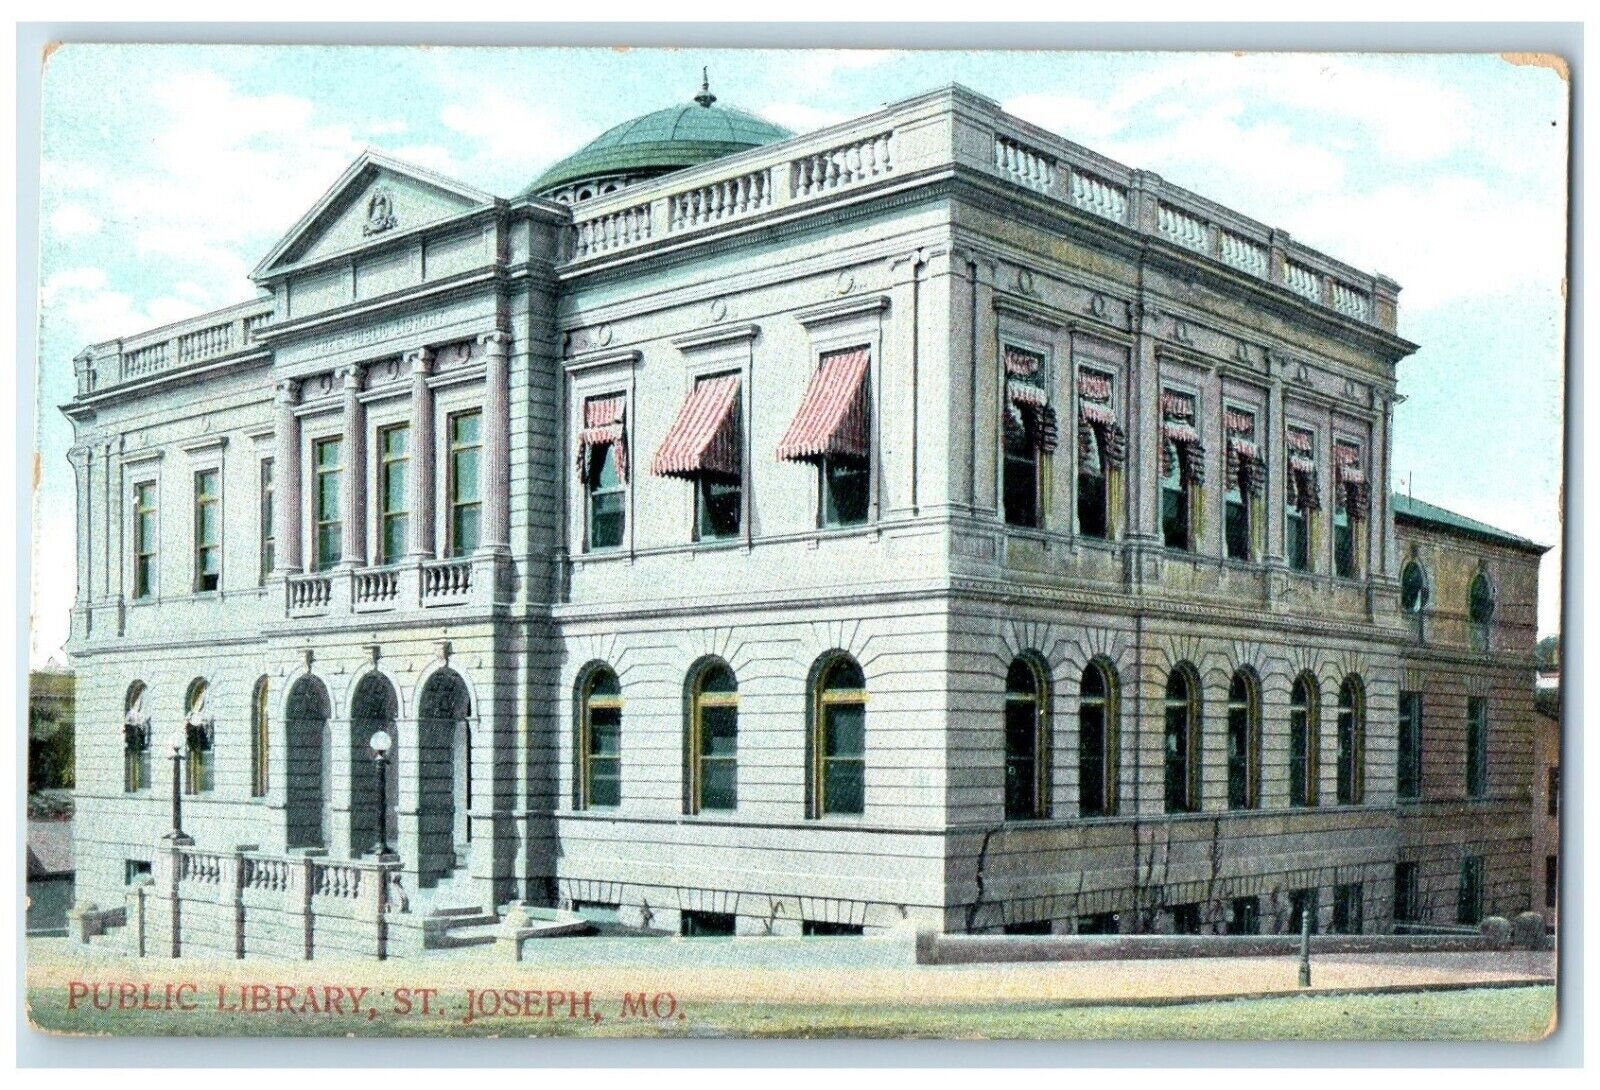 c1910 Public Library Exterior Building St. Joseph Missouri MO Vintage Postcard